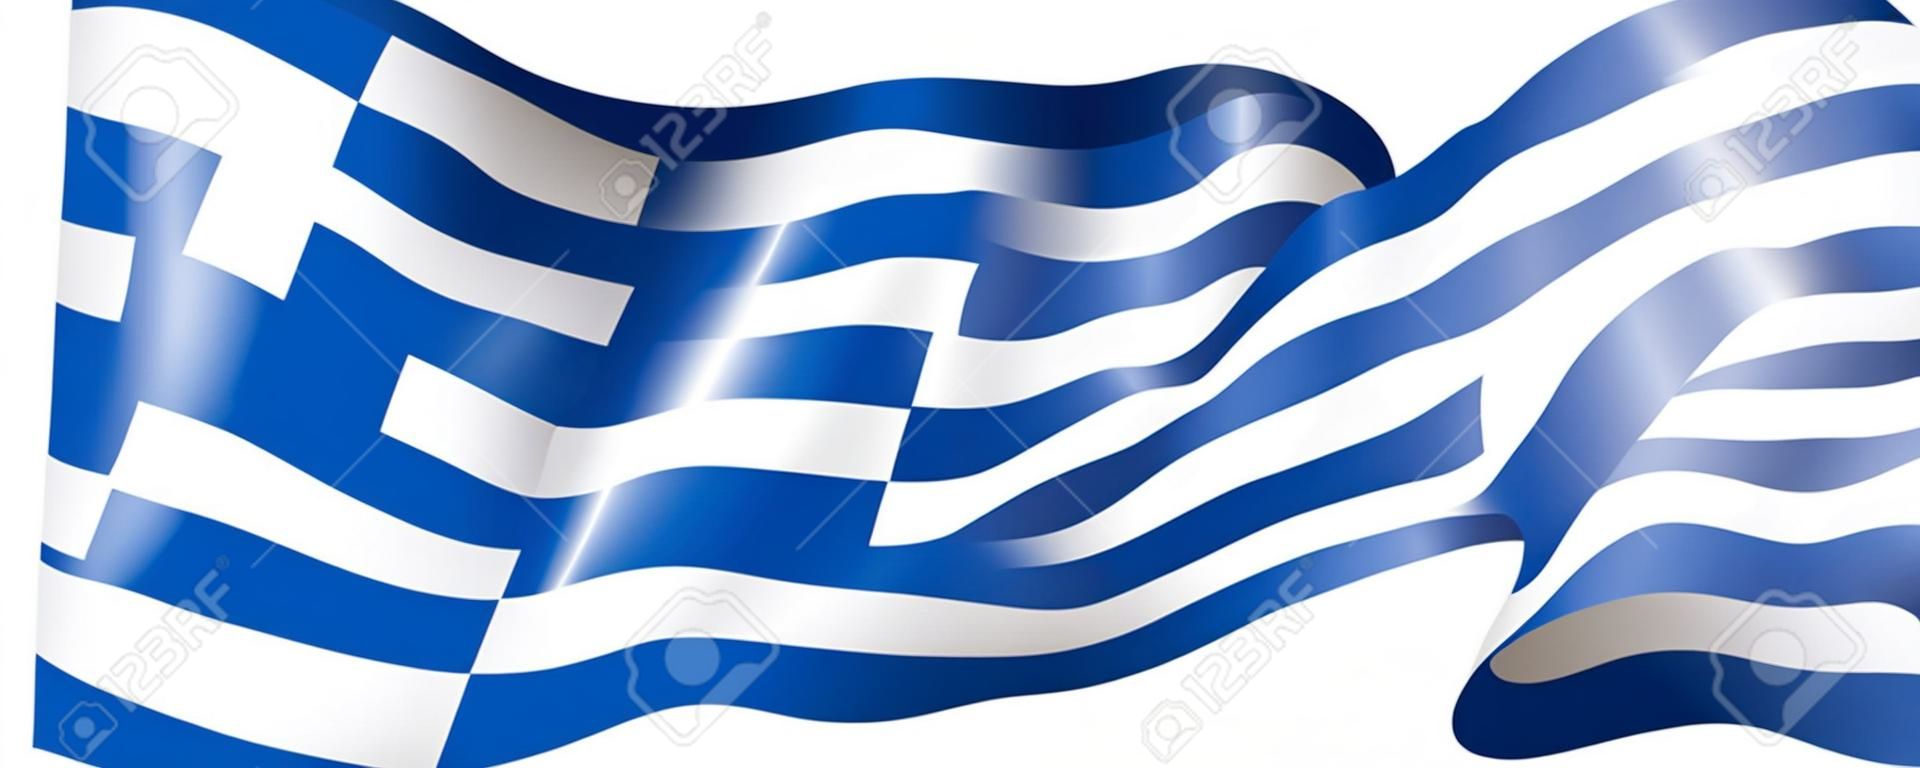 Griechenland-Flagge, Vektorillustration auf einem weißen Hintergrund